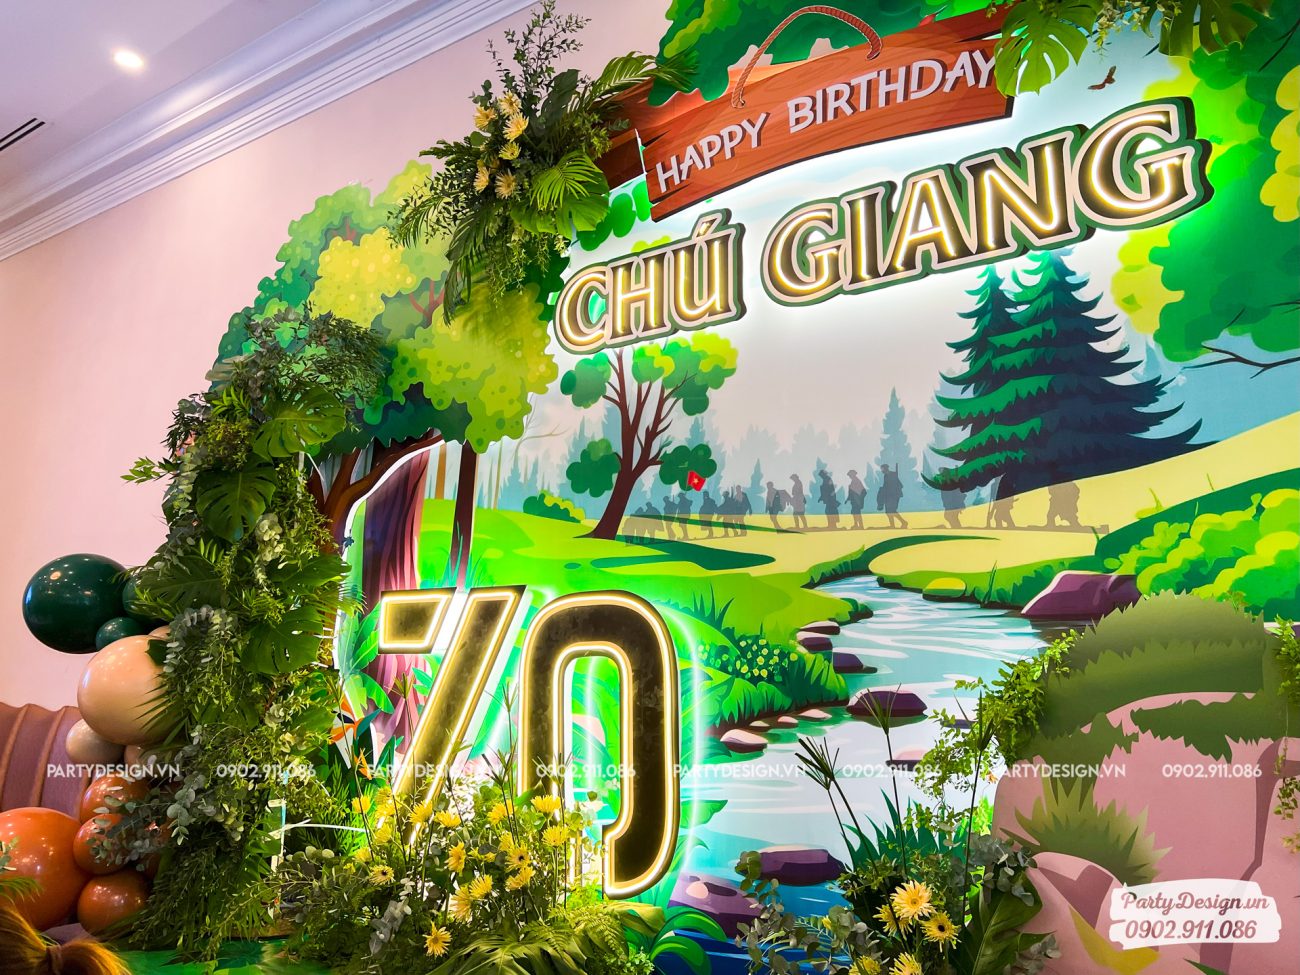 Mẫu backdrop chủ đề rừng xanh, suối, bộ đội - Sinh nhật chú Giang, chủ tịch May Phương Đông (4)